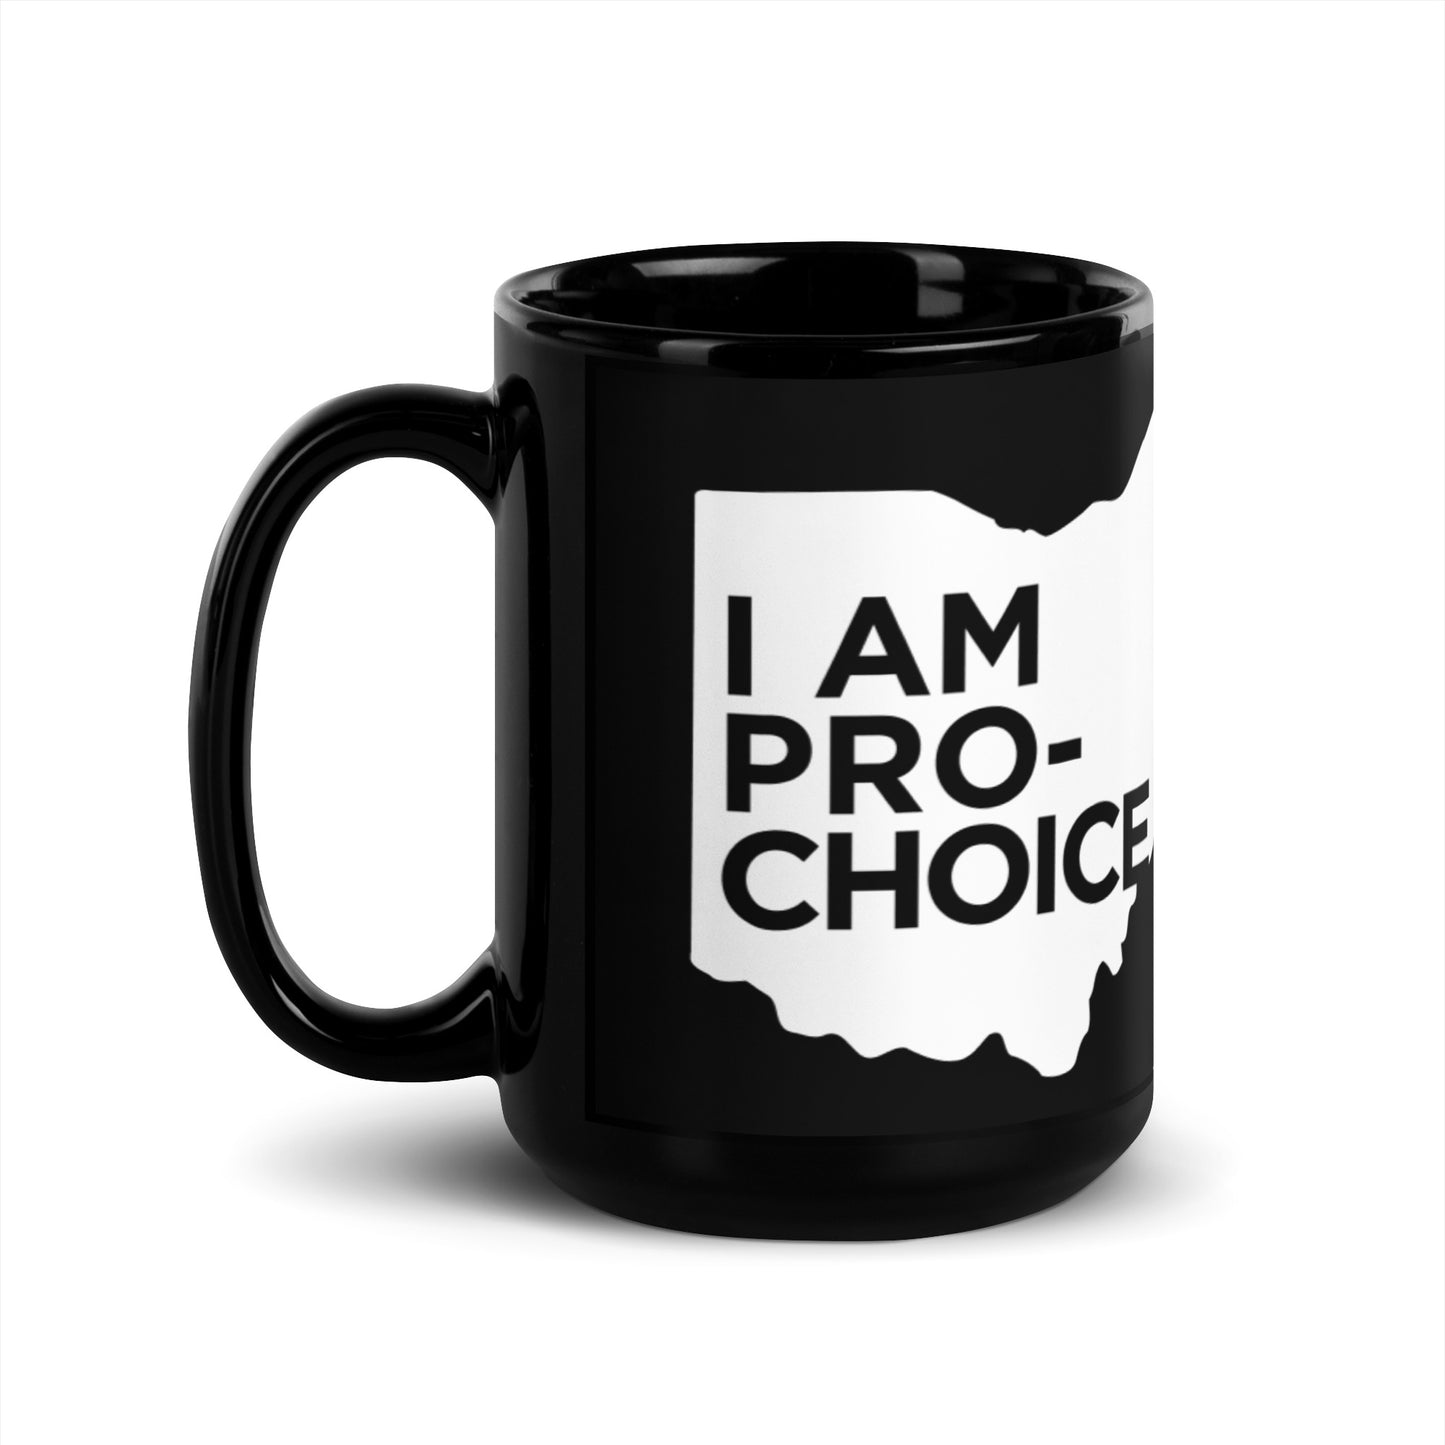 Pro-Choice Ohio mug